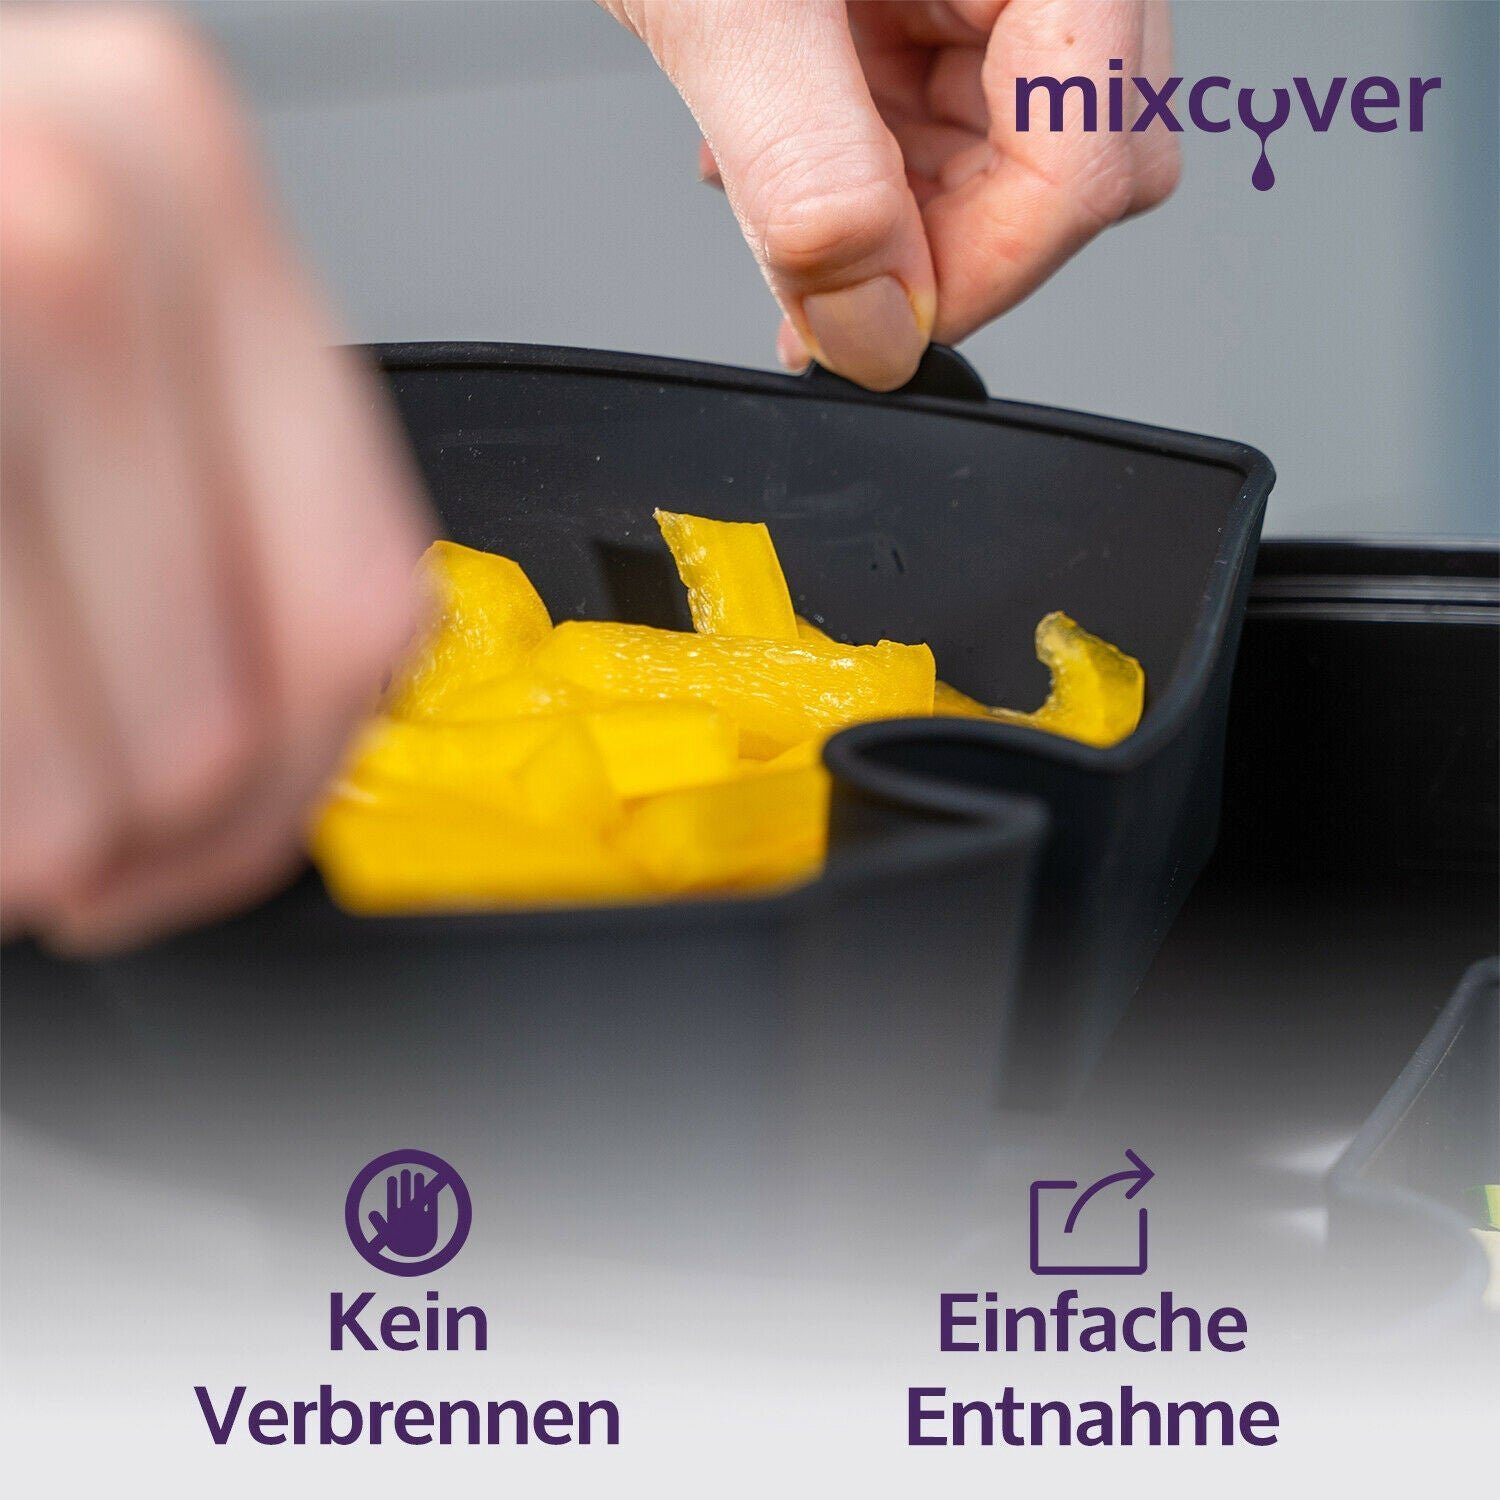 Mixcover Küchenmaschinen-Adapter mixcover Garraumteiler (HALB) für Cookit Dampfgarraum Bosch